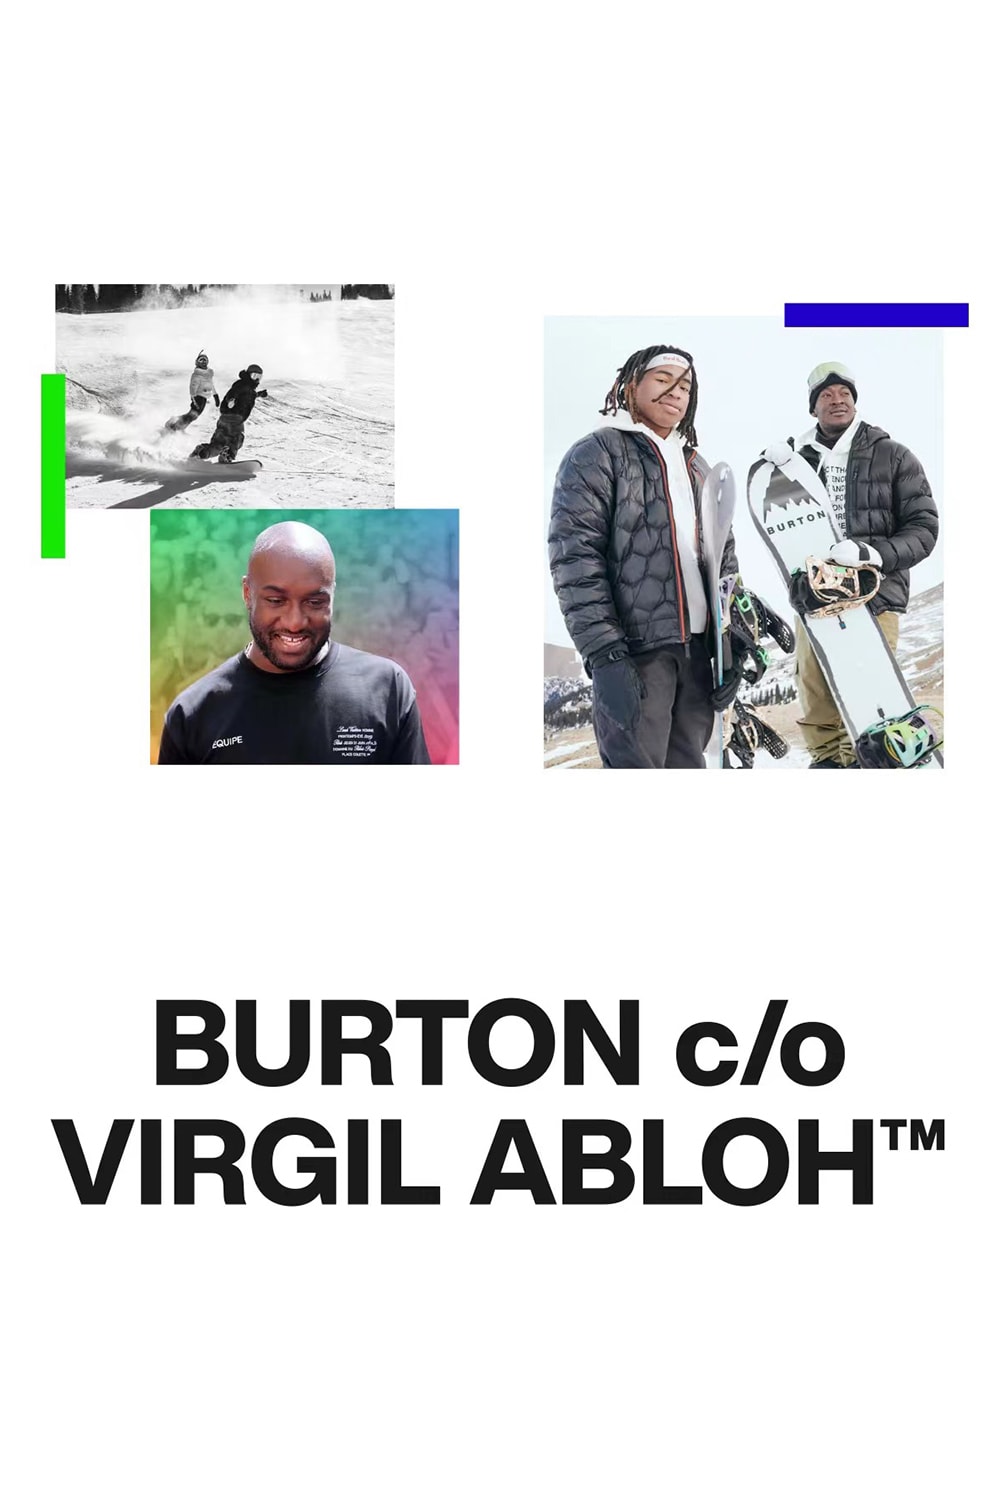 BURTON c/o Virgil Abloh™ 聯名限量單板系列即將登場